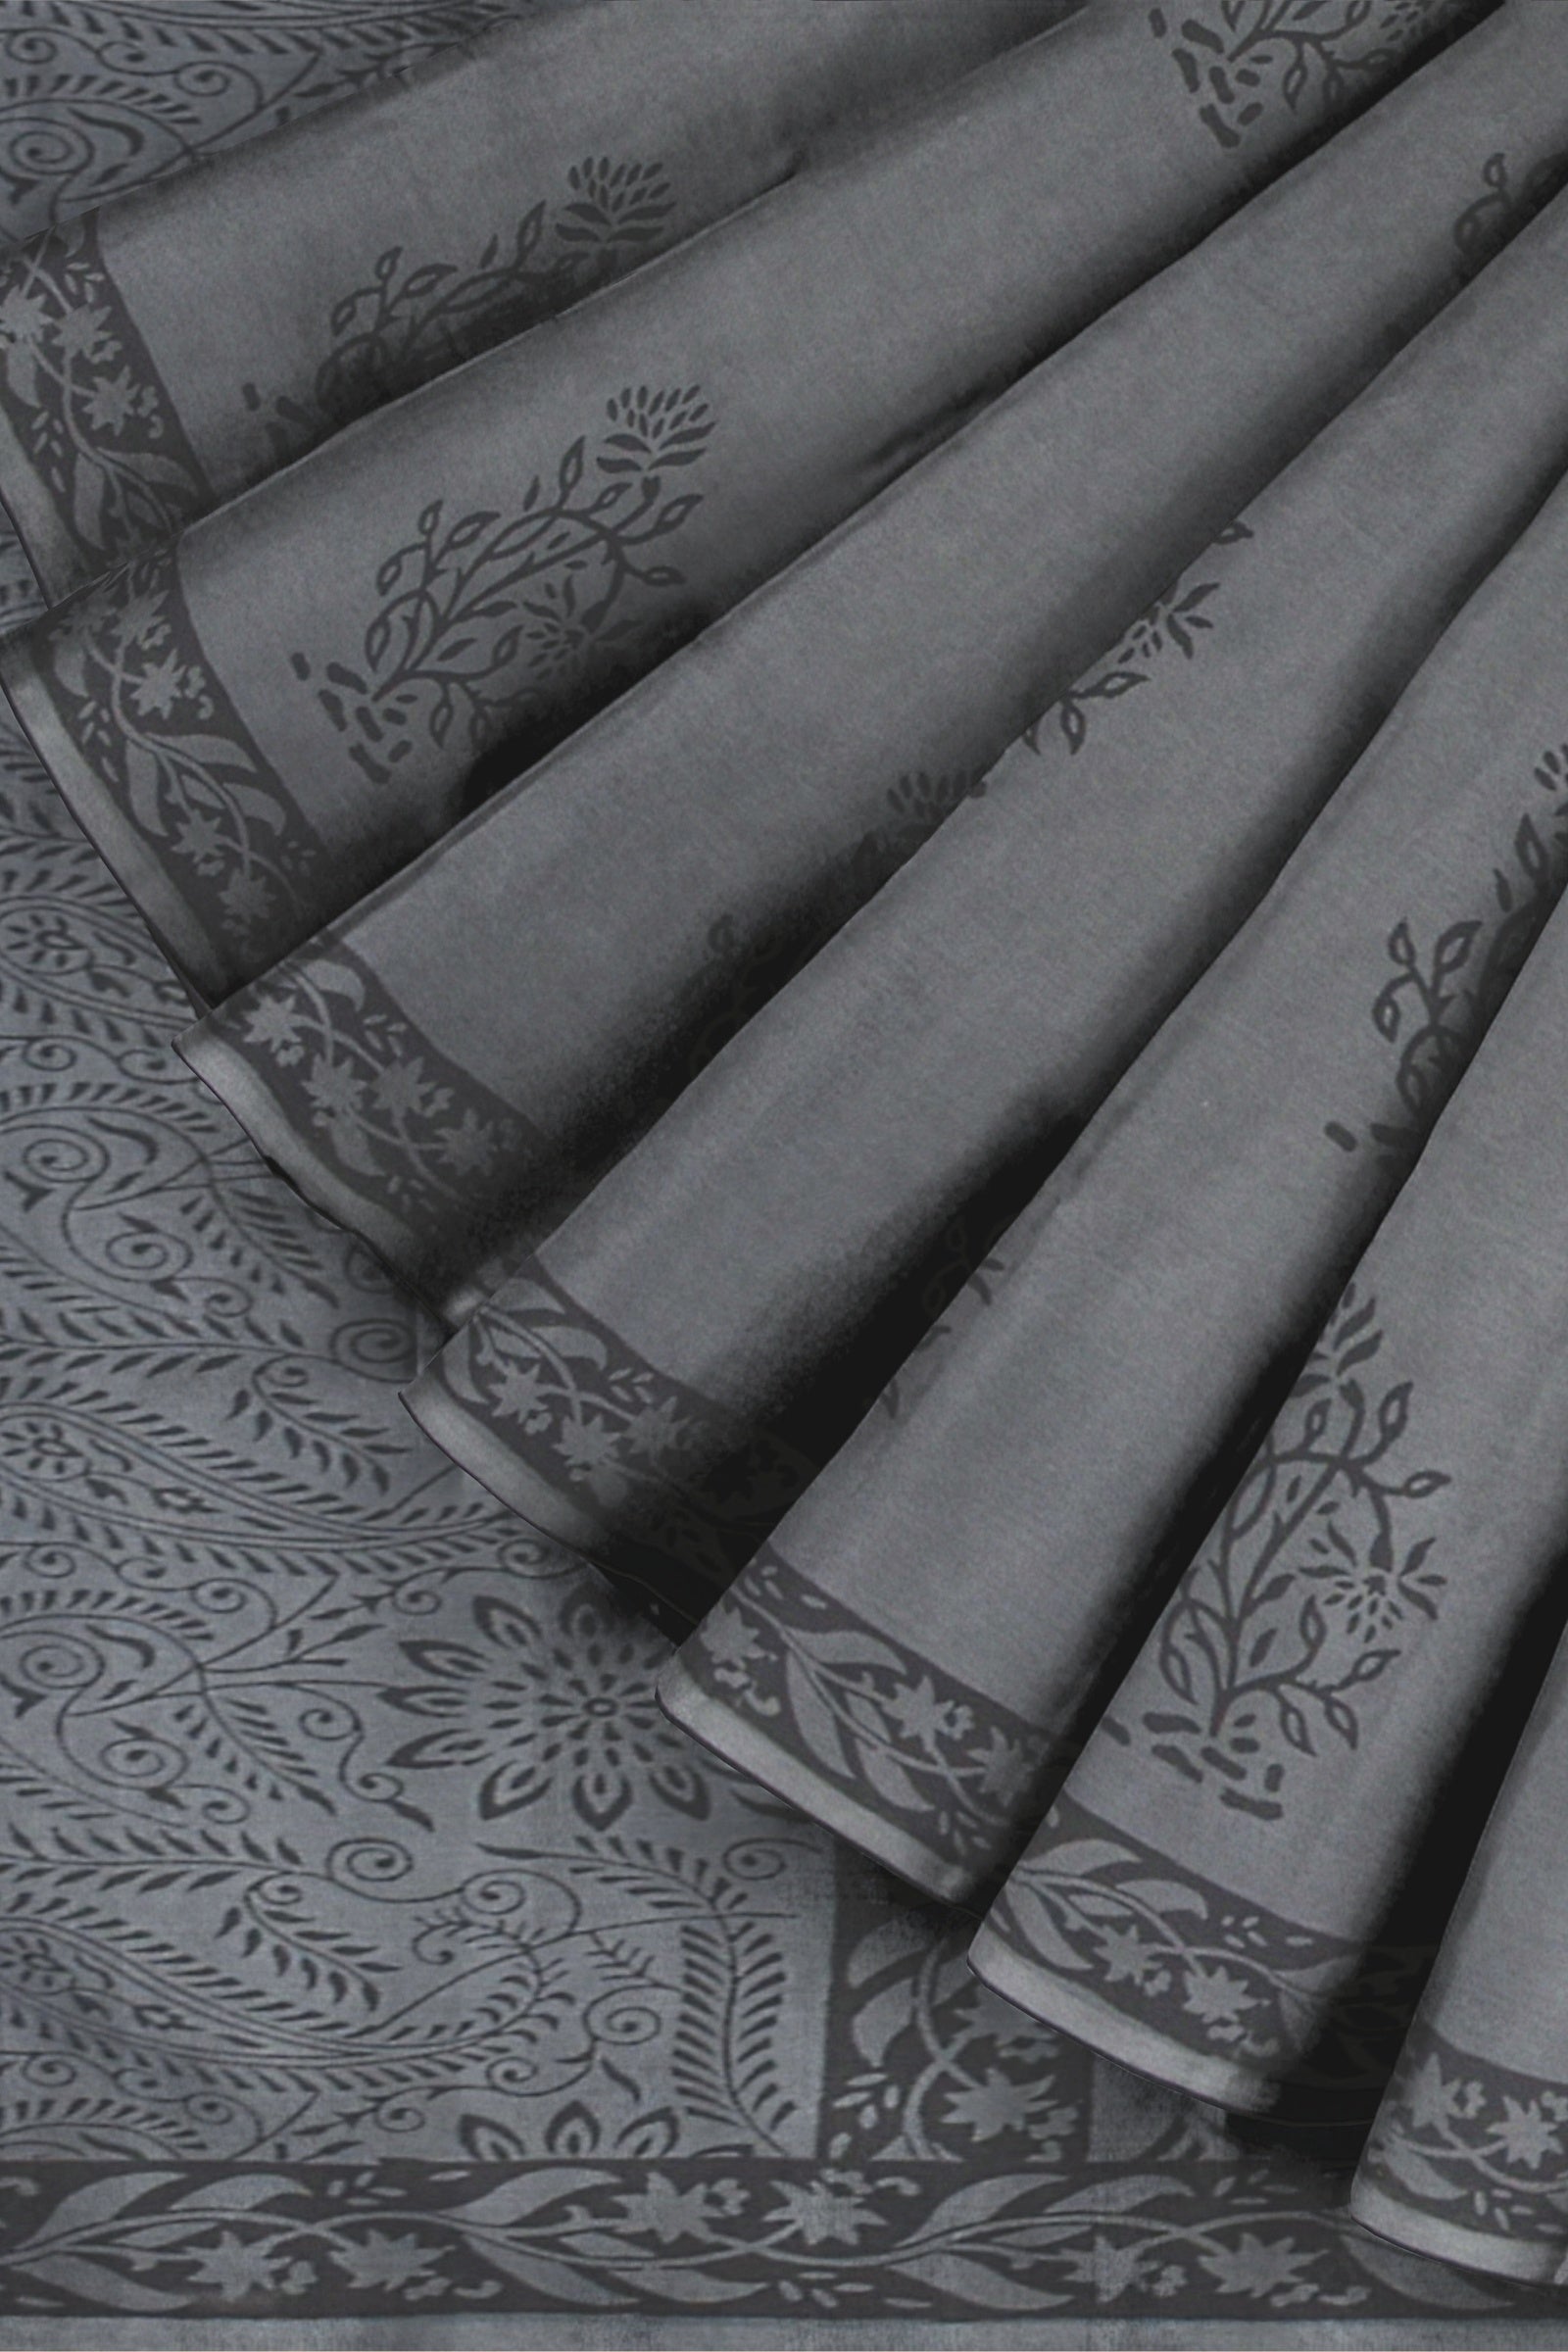 Grey Floral Pattern Hand Block Print Malmal Cotton Saree SKU-AS10070 - Bhartiya Shilp